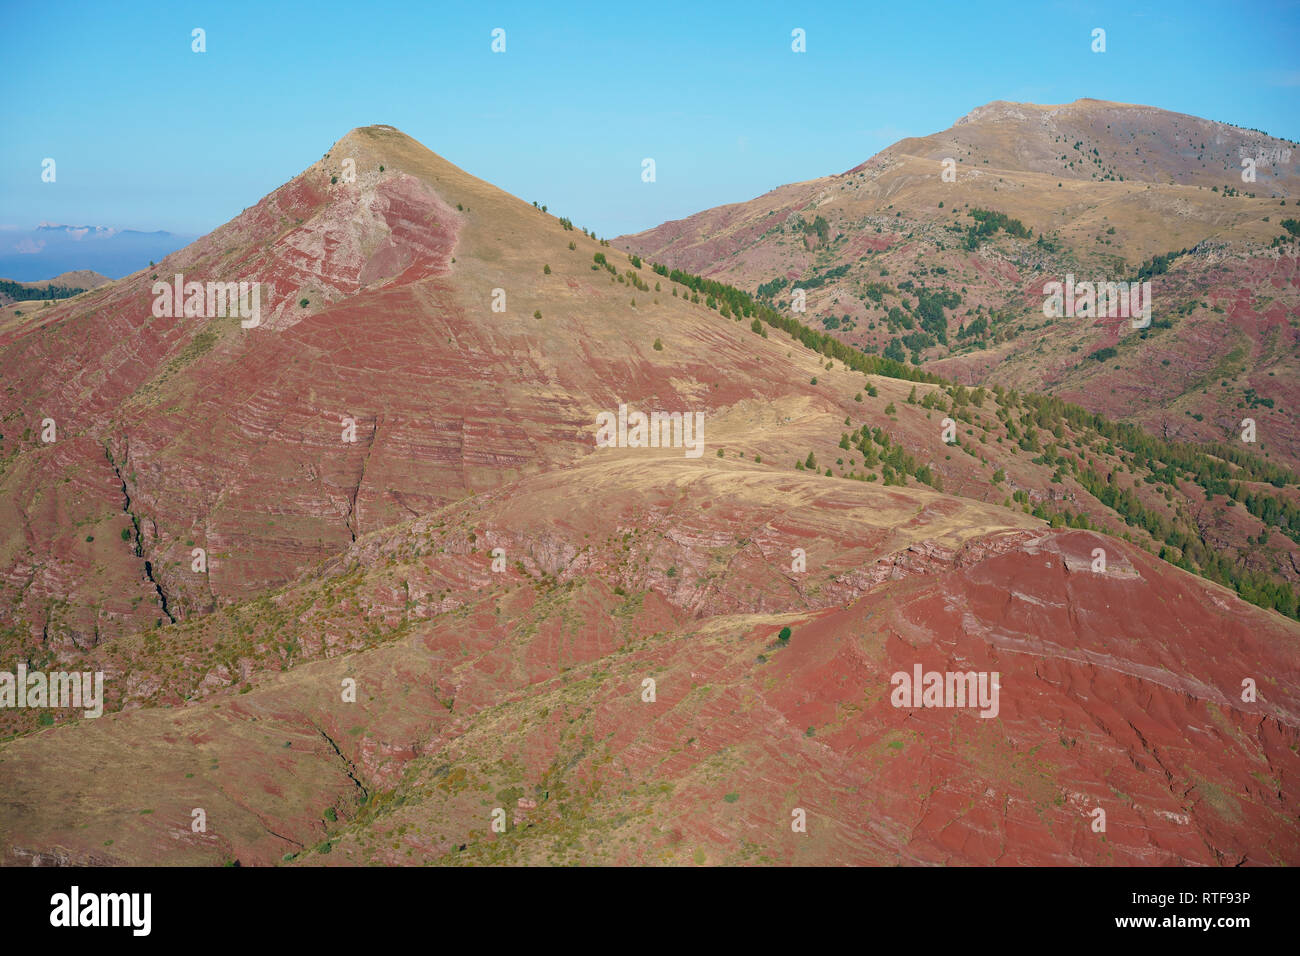 LUFTAUFNAHME. Ungewöhnliche Landschaft aus rotem Felsen in den Alpen. Tête de Rigaud (links) und Dome de Barrot (rechts). Rigaud, Alpes-Maritimes, Frankreich. Stockfoto